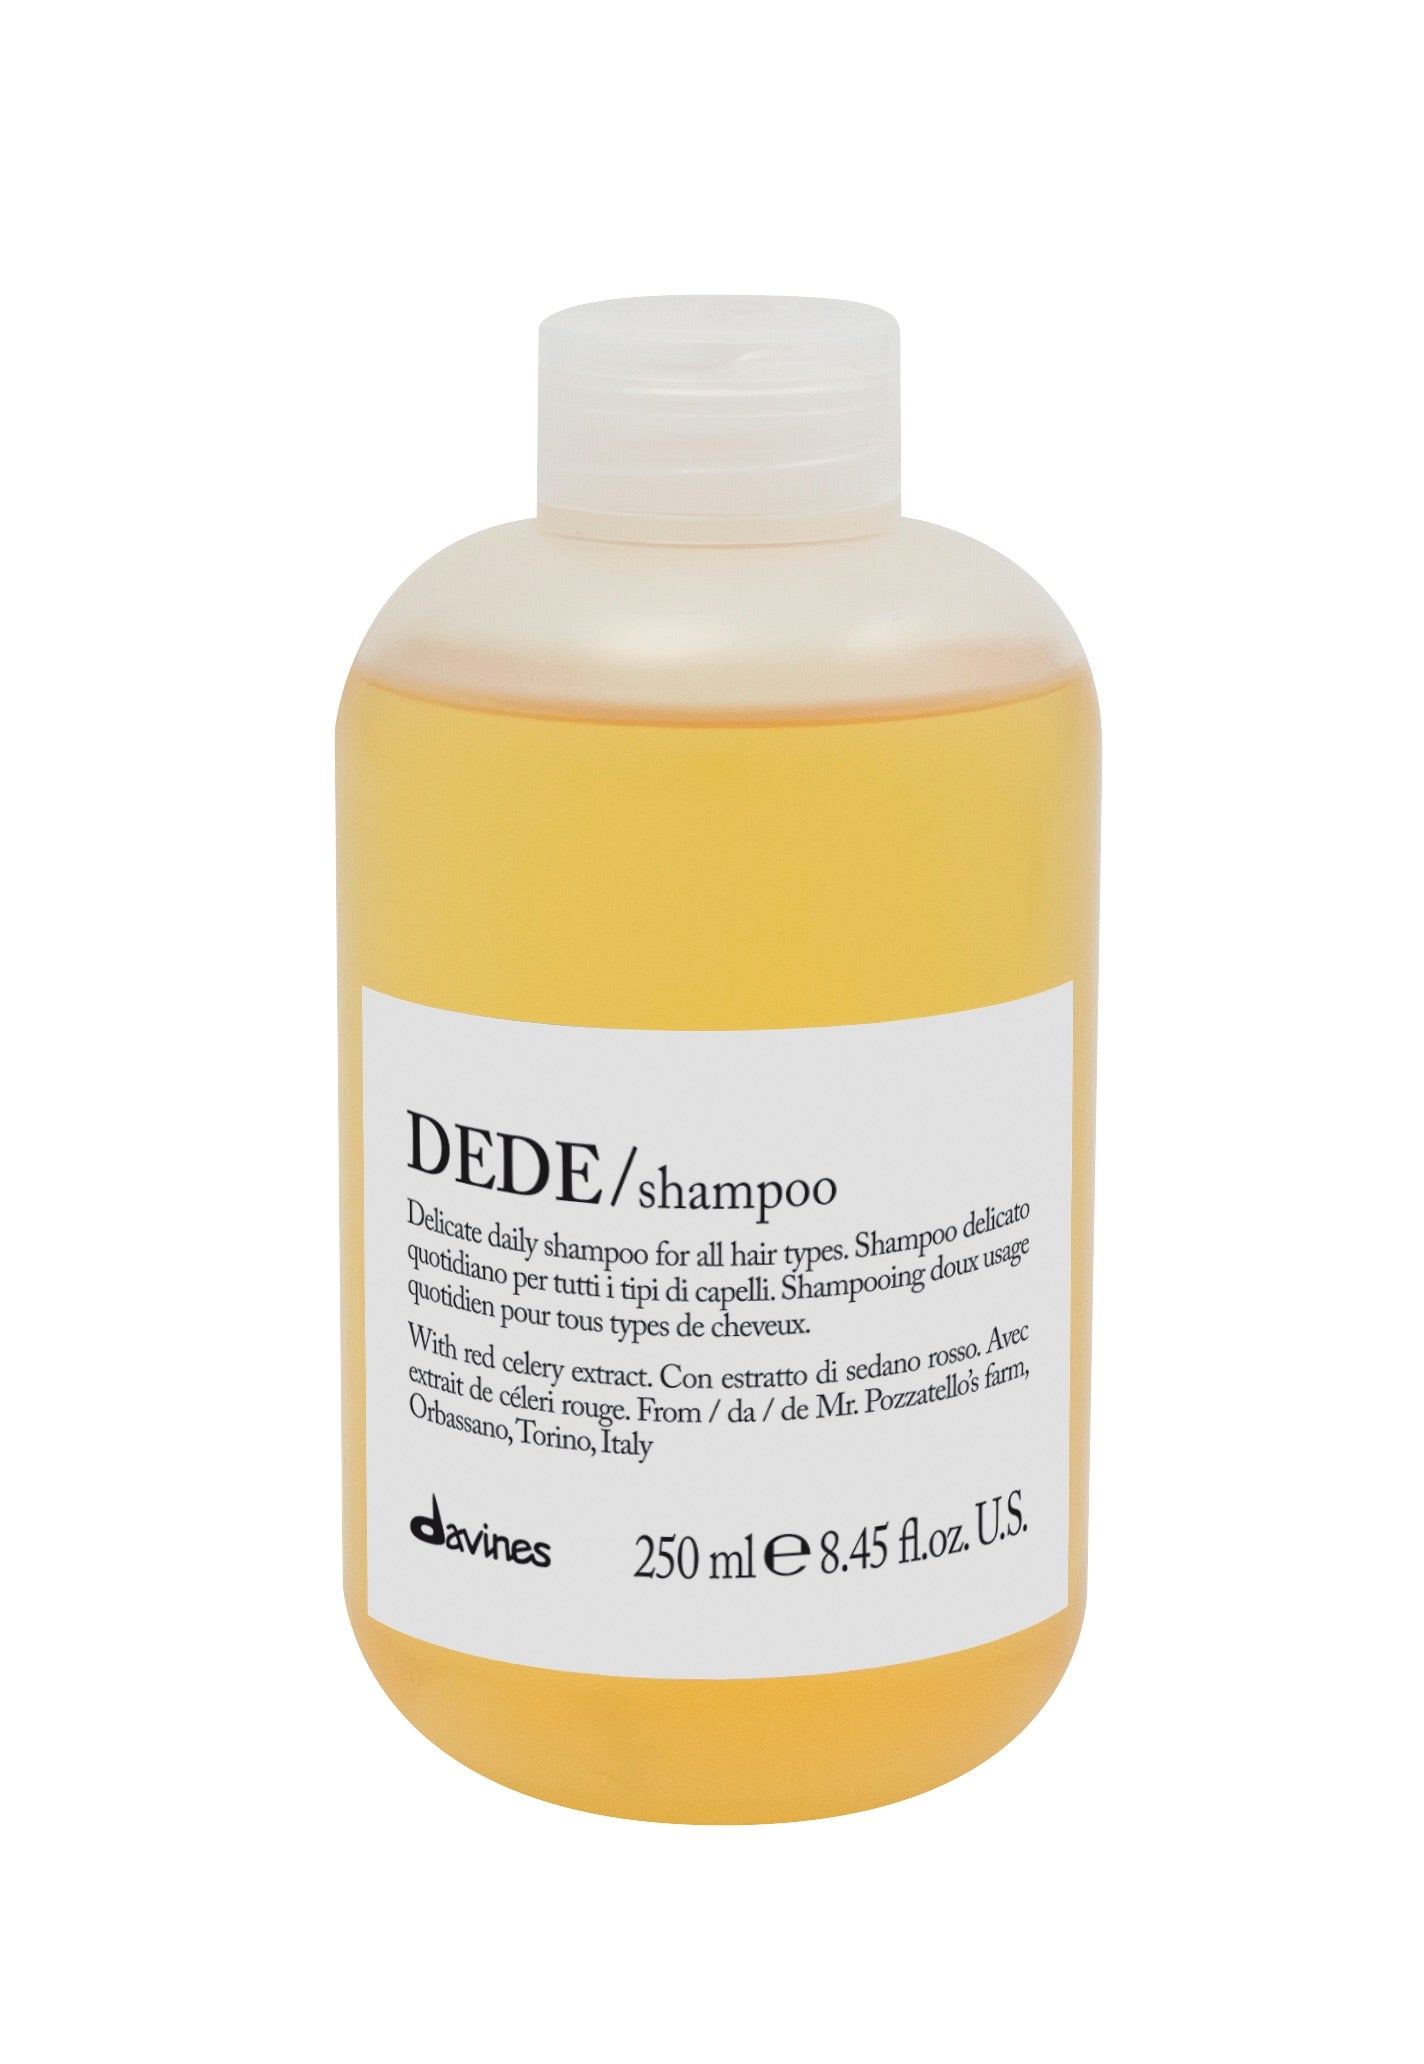 DEDE/Shampoo 250ml